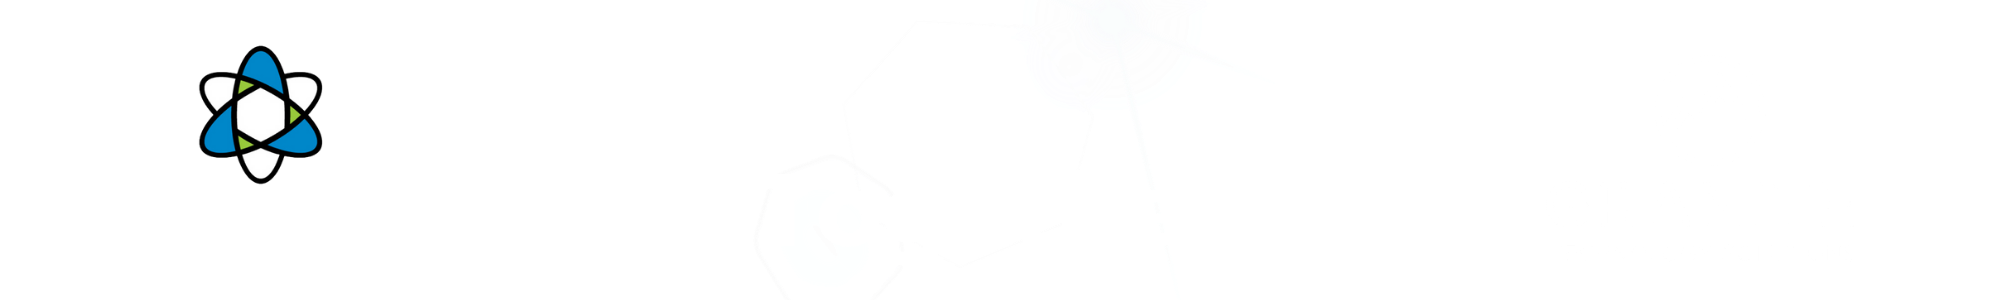 Totalcom_Better Together_White